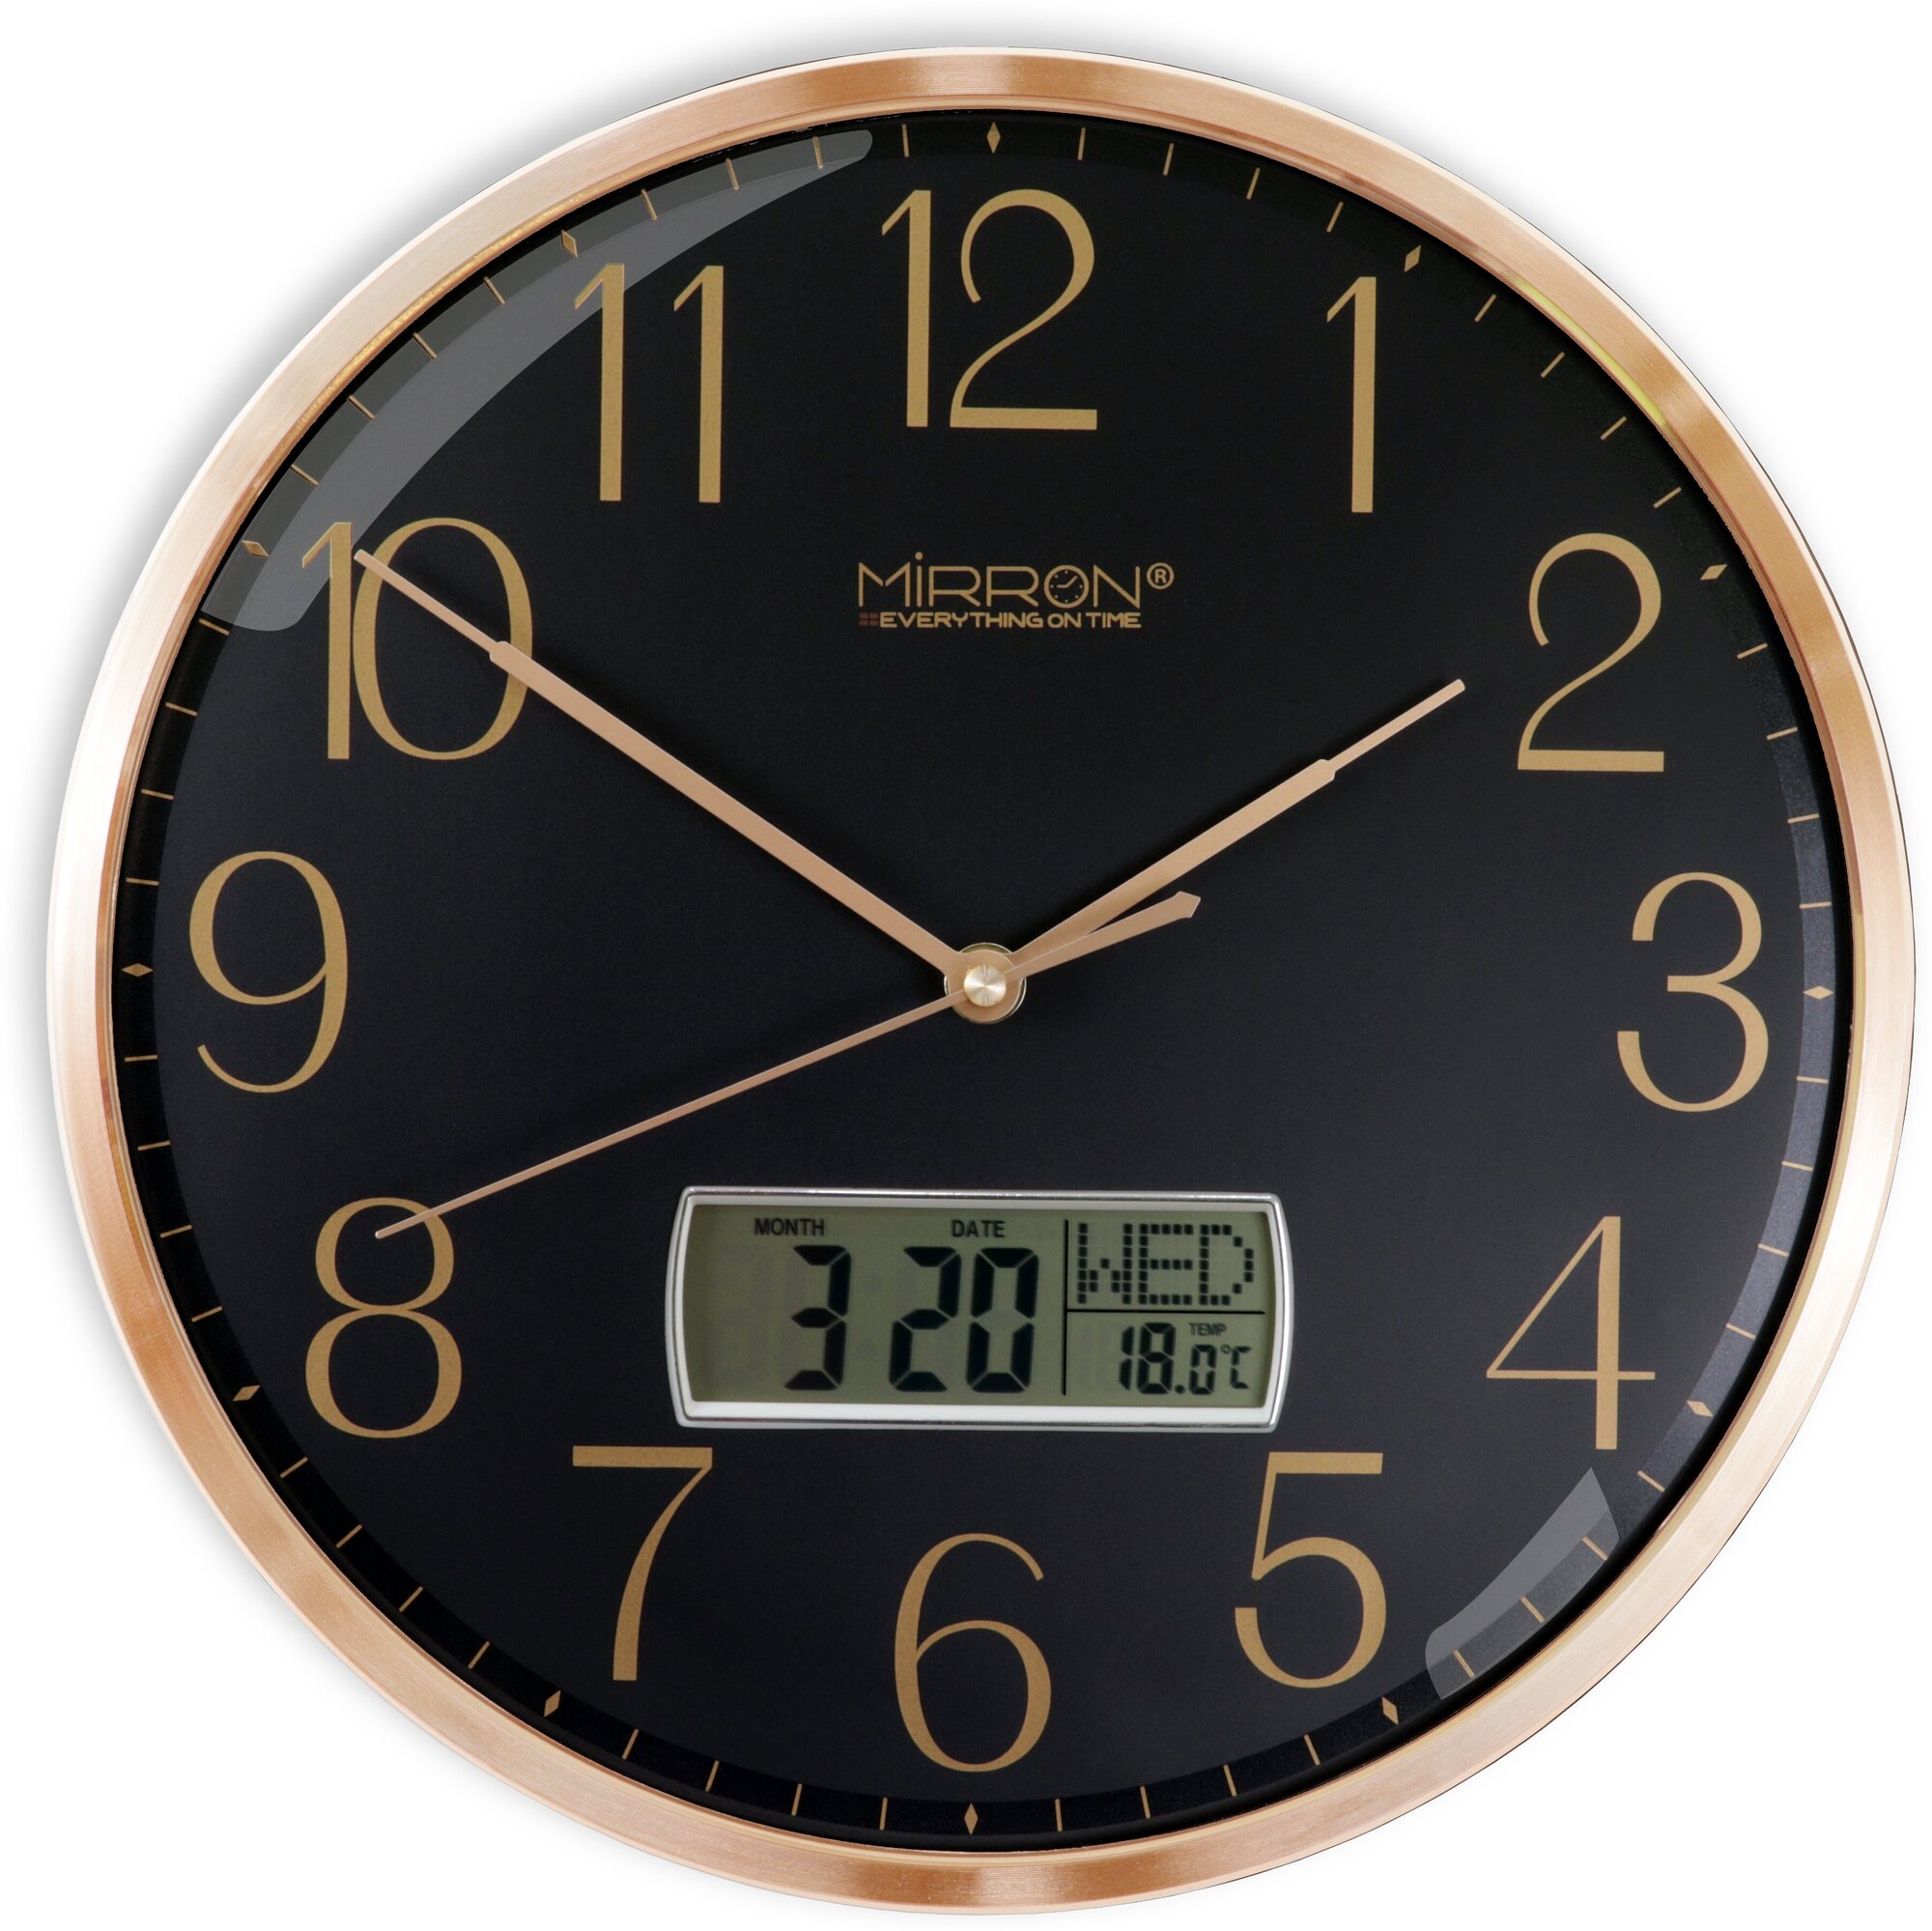 Большие круглые настенные кварцевые часы MIRRON P3264A-1 ЖК ЗЧ/32 см/Золотой цвет корпуса/Чёрный (тёмный) циферблат/Бесшумный плавный механизм/Оригинальные часы/Часы с жк-дисплеем/Часы с датой/Часы с термометром